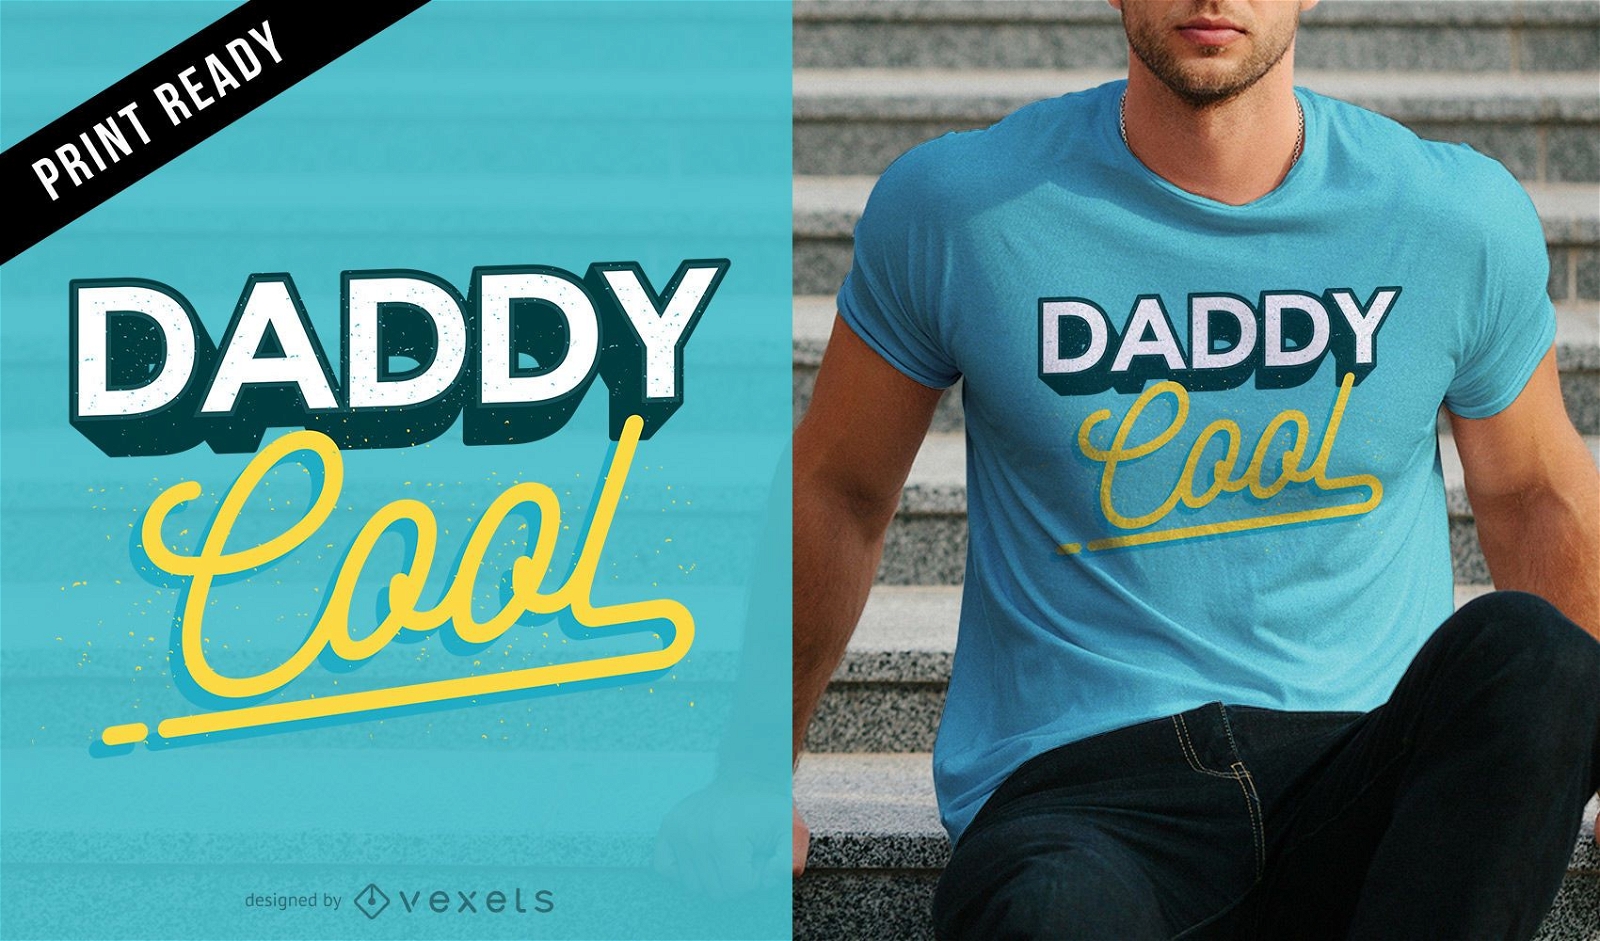 Dise?o de camiseta Daddy Cool